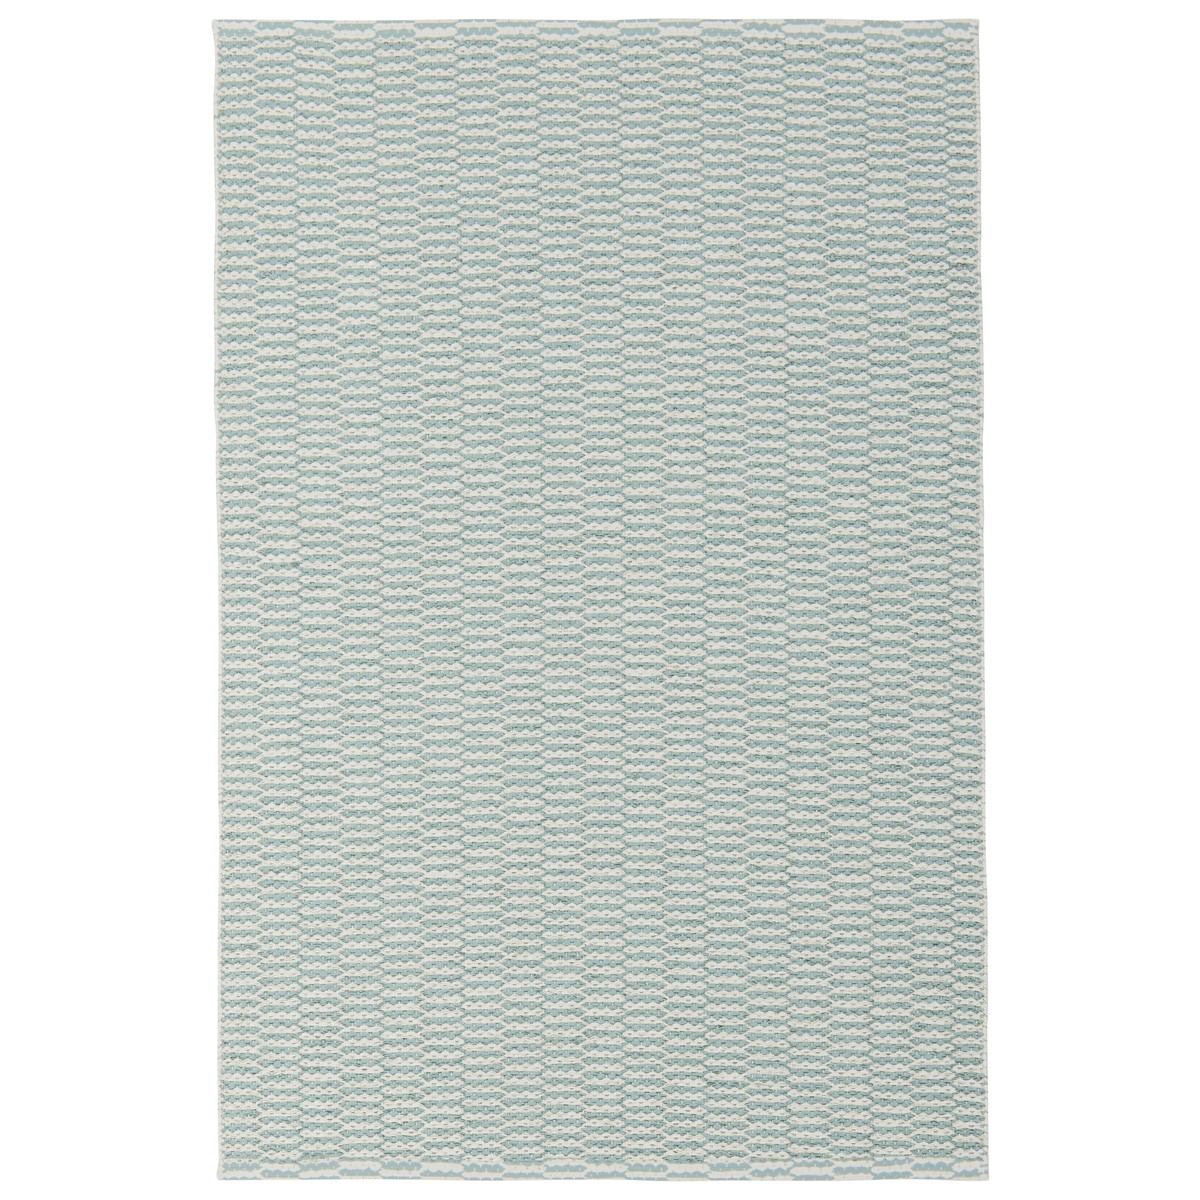 PASTEL - Tapis Couleur pastel - Bleu & Gris 200 x 290 cm